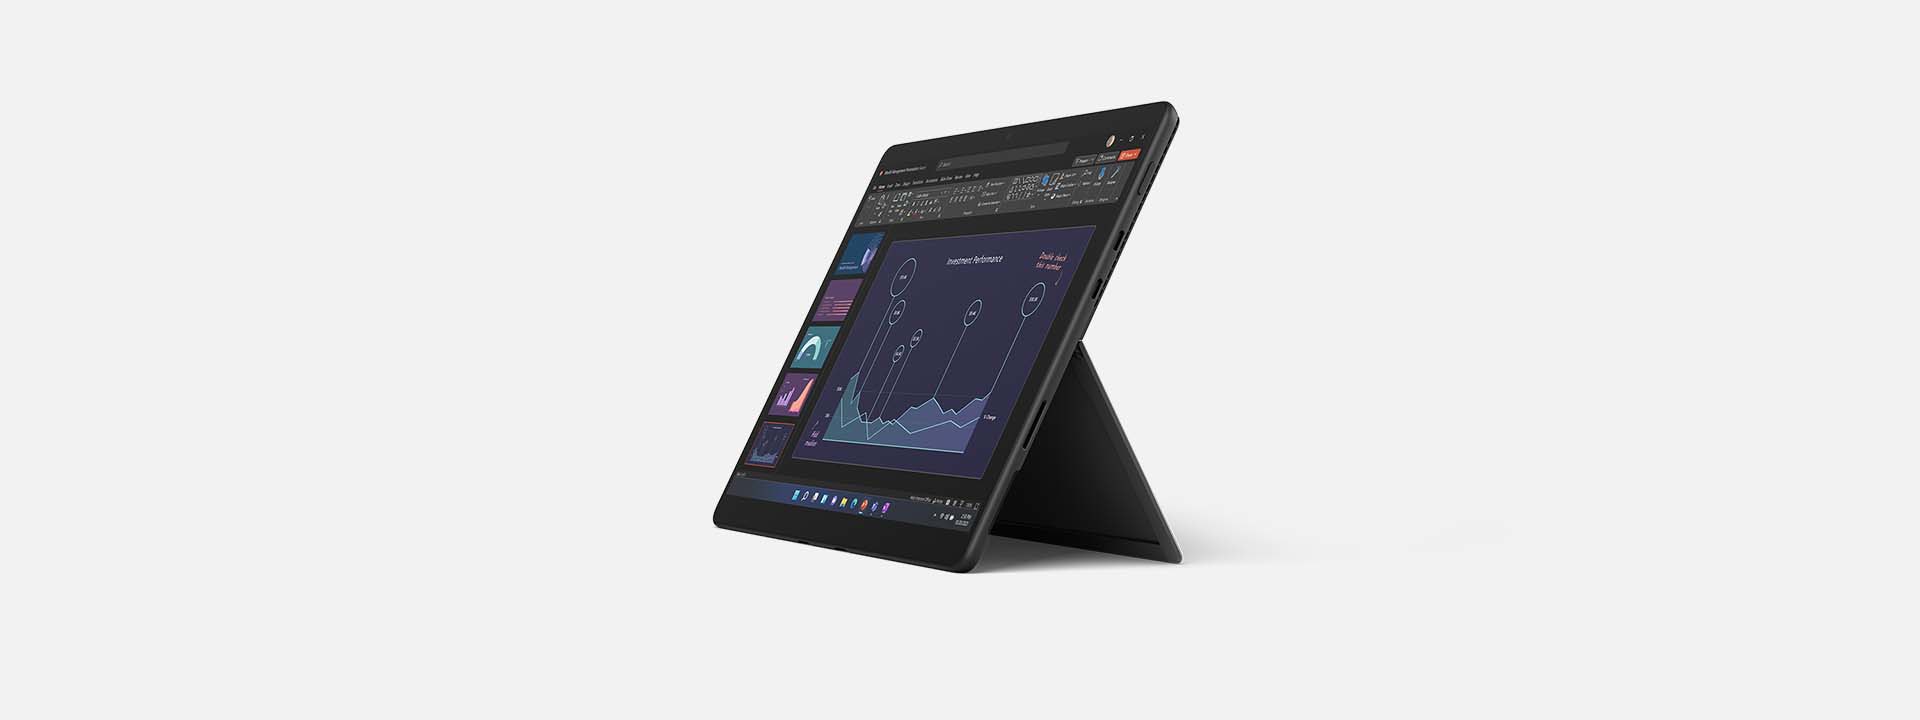 Abbildung eines Surface Pro 8 mit Bildschirm zur Veranschaulichung der Akkulaufzeit